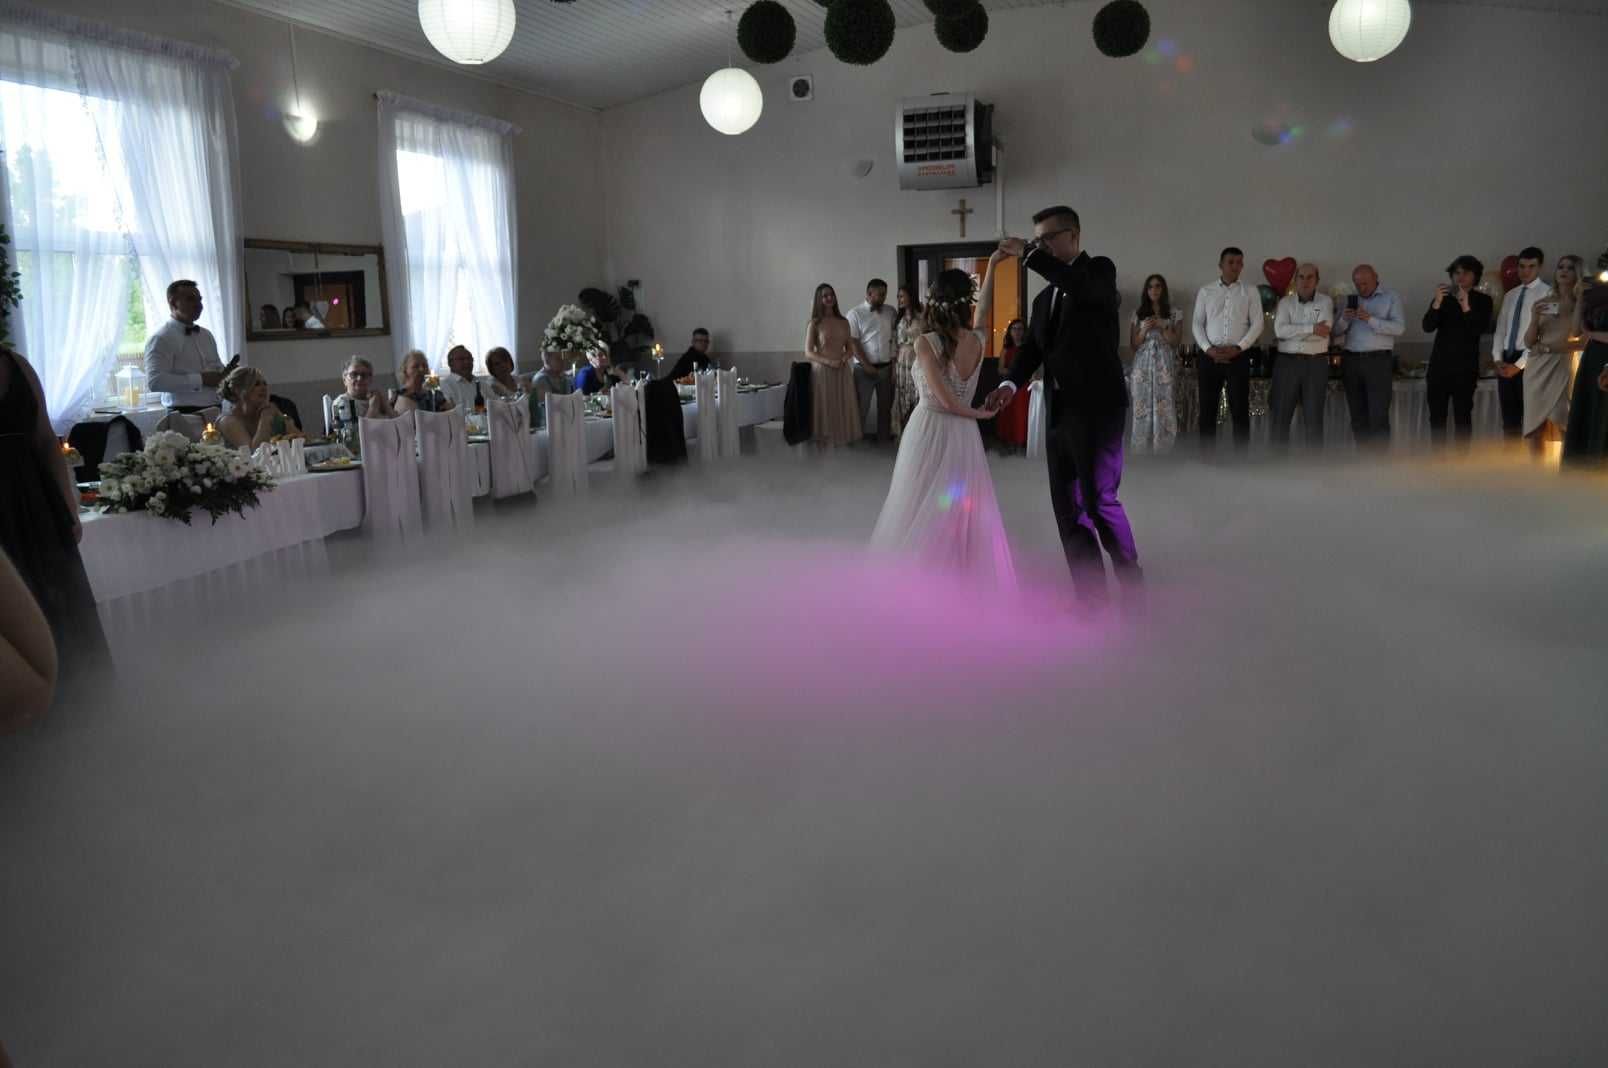 Taniec w chmurach na wesele i inne okazje - ciężki dym